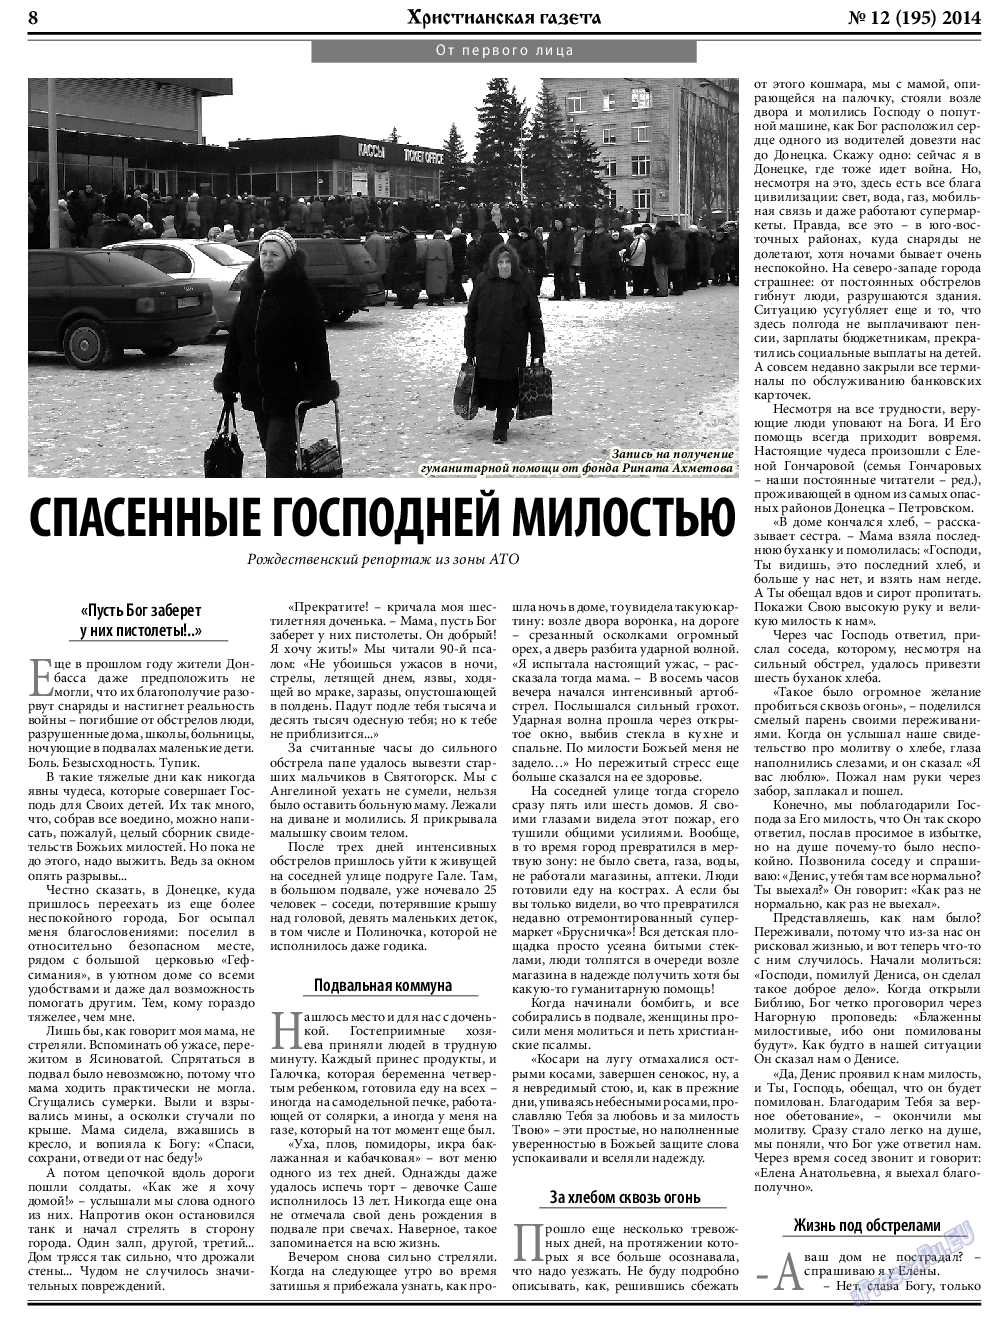 Христианская газета, газета. 2014 №12 стр.8